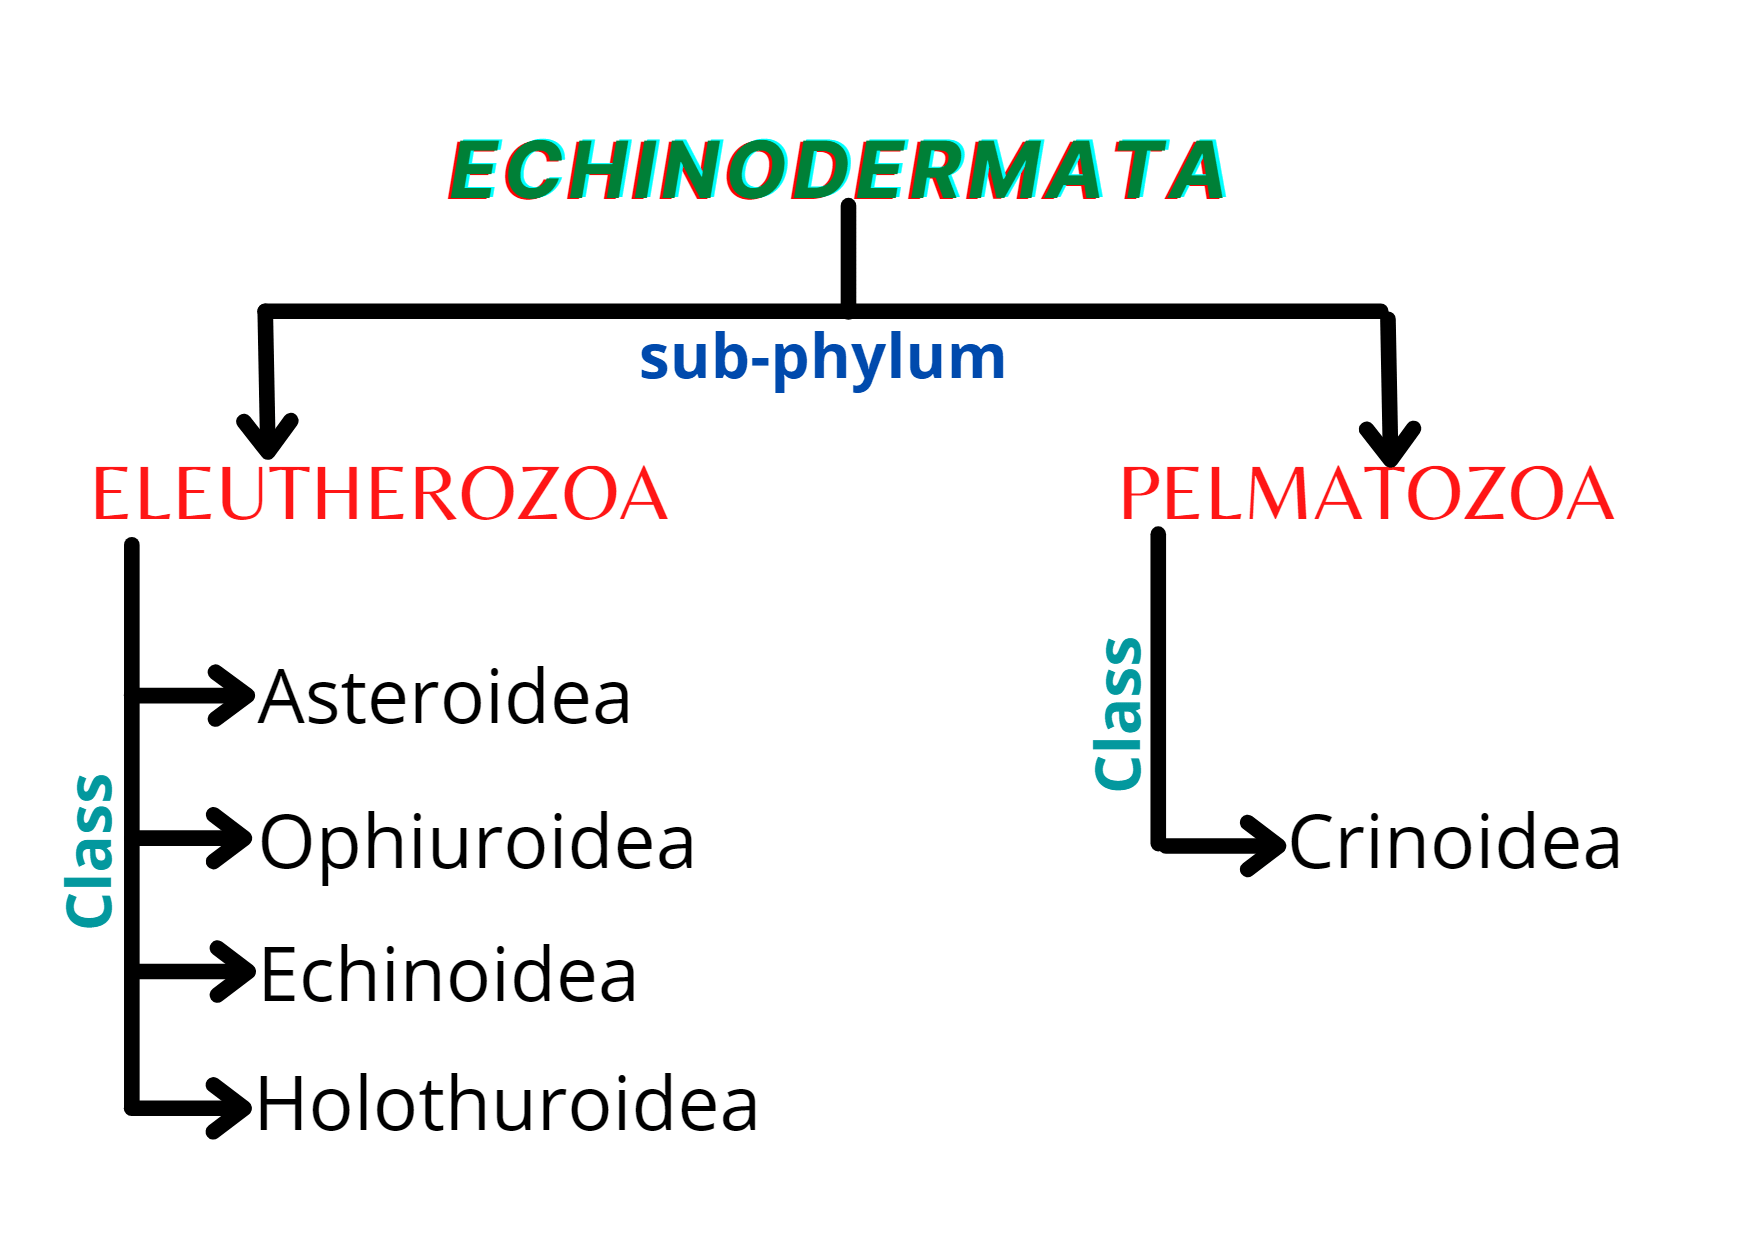 classes of echinodermata